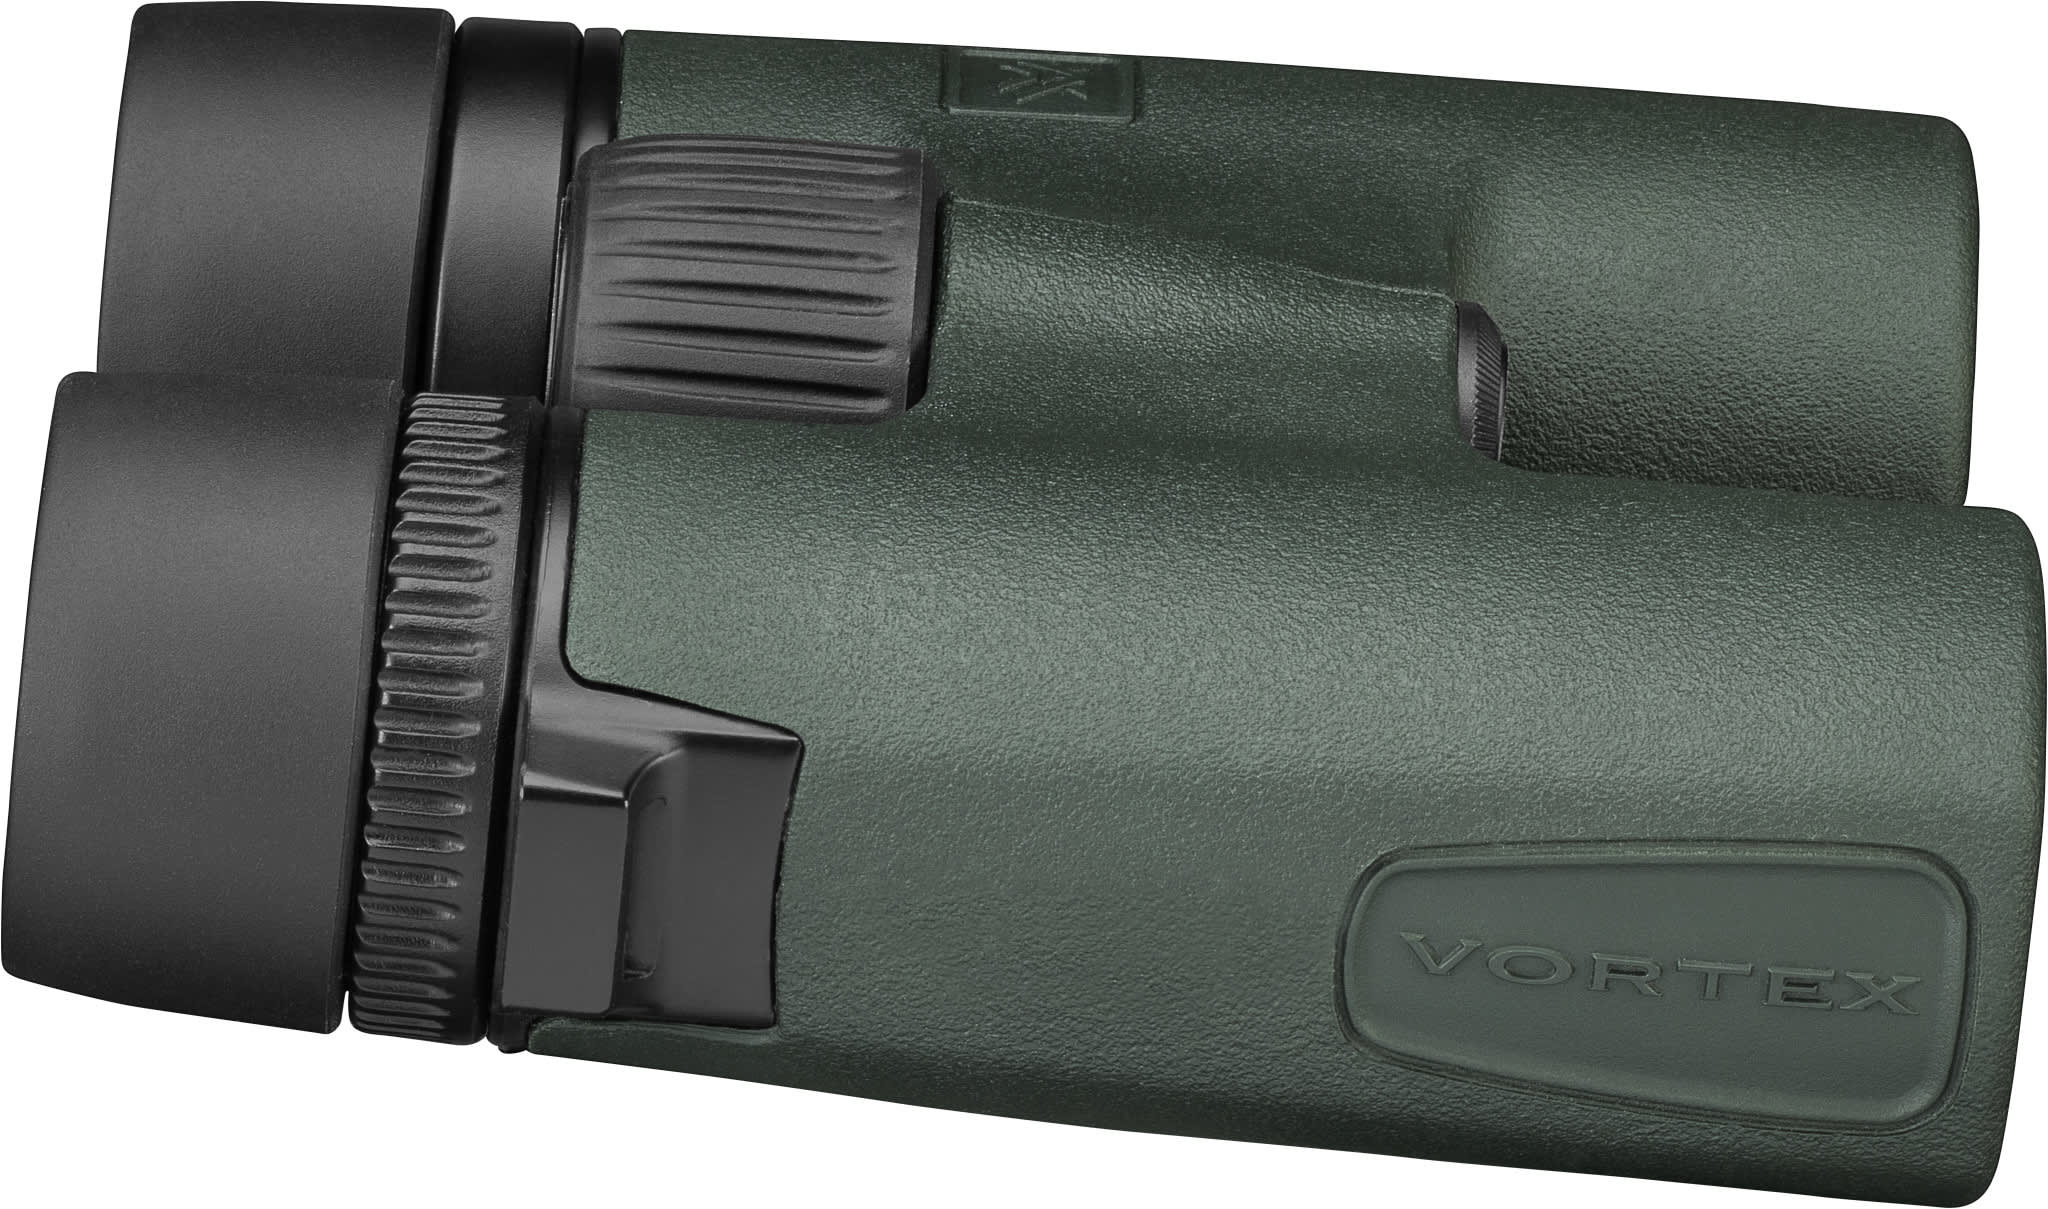 Vortex® Bantam™ HD 6.5x32 Youth Binocular